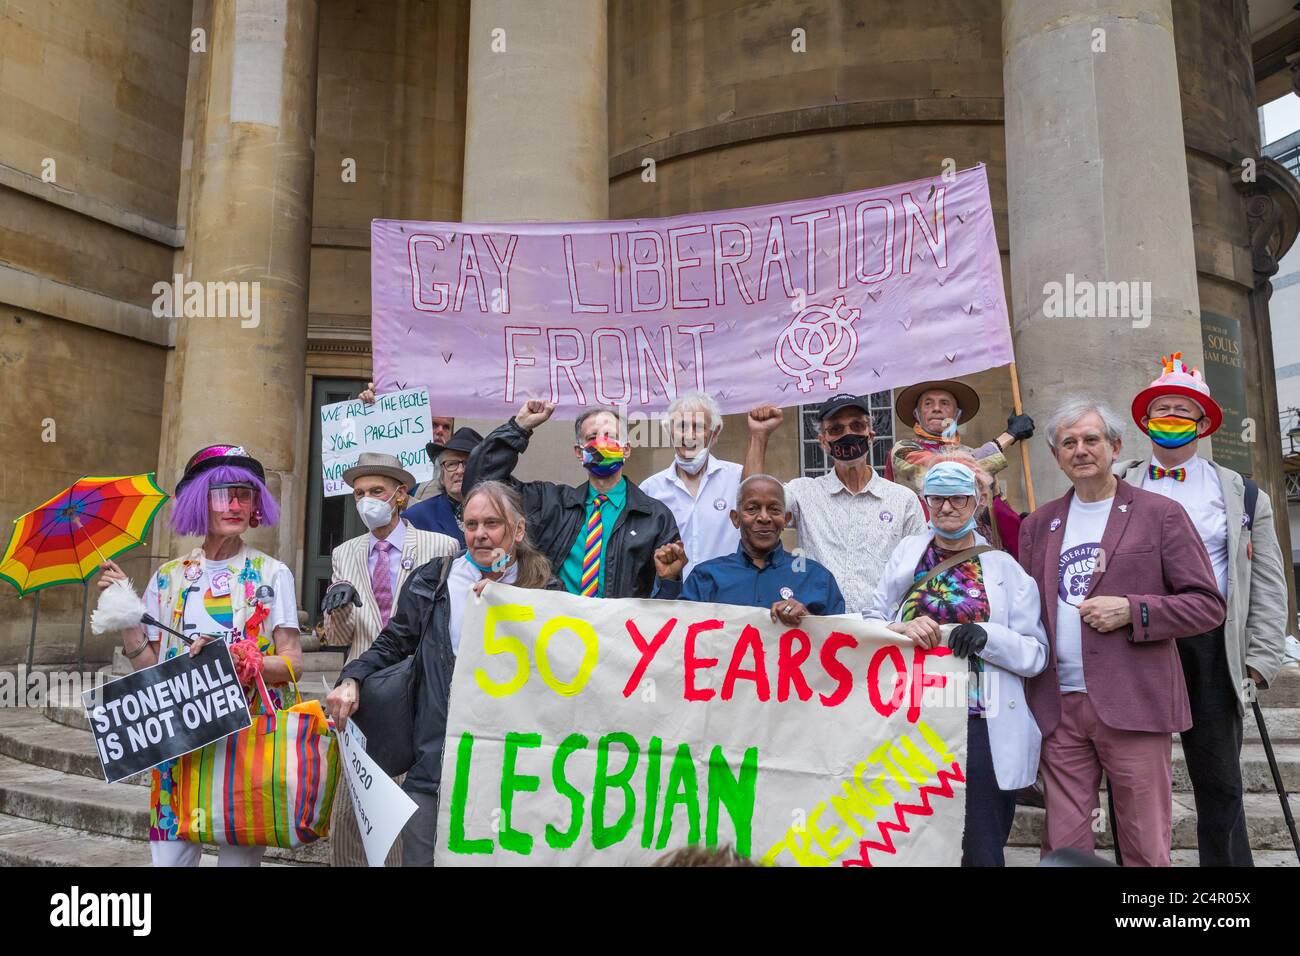 Queere Rechtsveteranen marschieren in Central London, um den 50. Jahrestag der Gay Liberation Front zu feiern und Stolz als Protest zurückzufordern Stockfoto